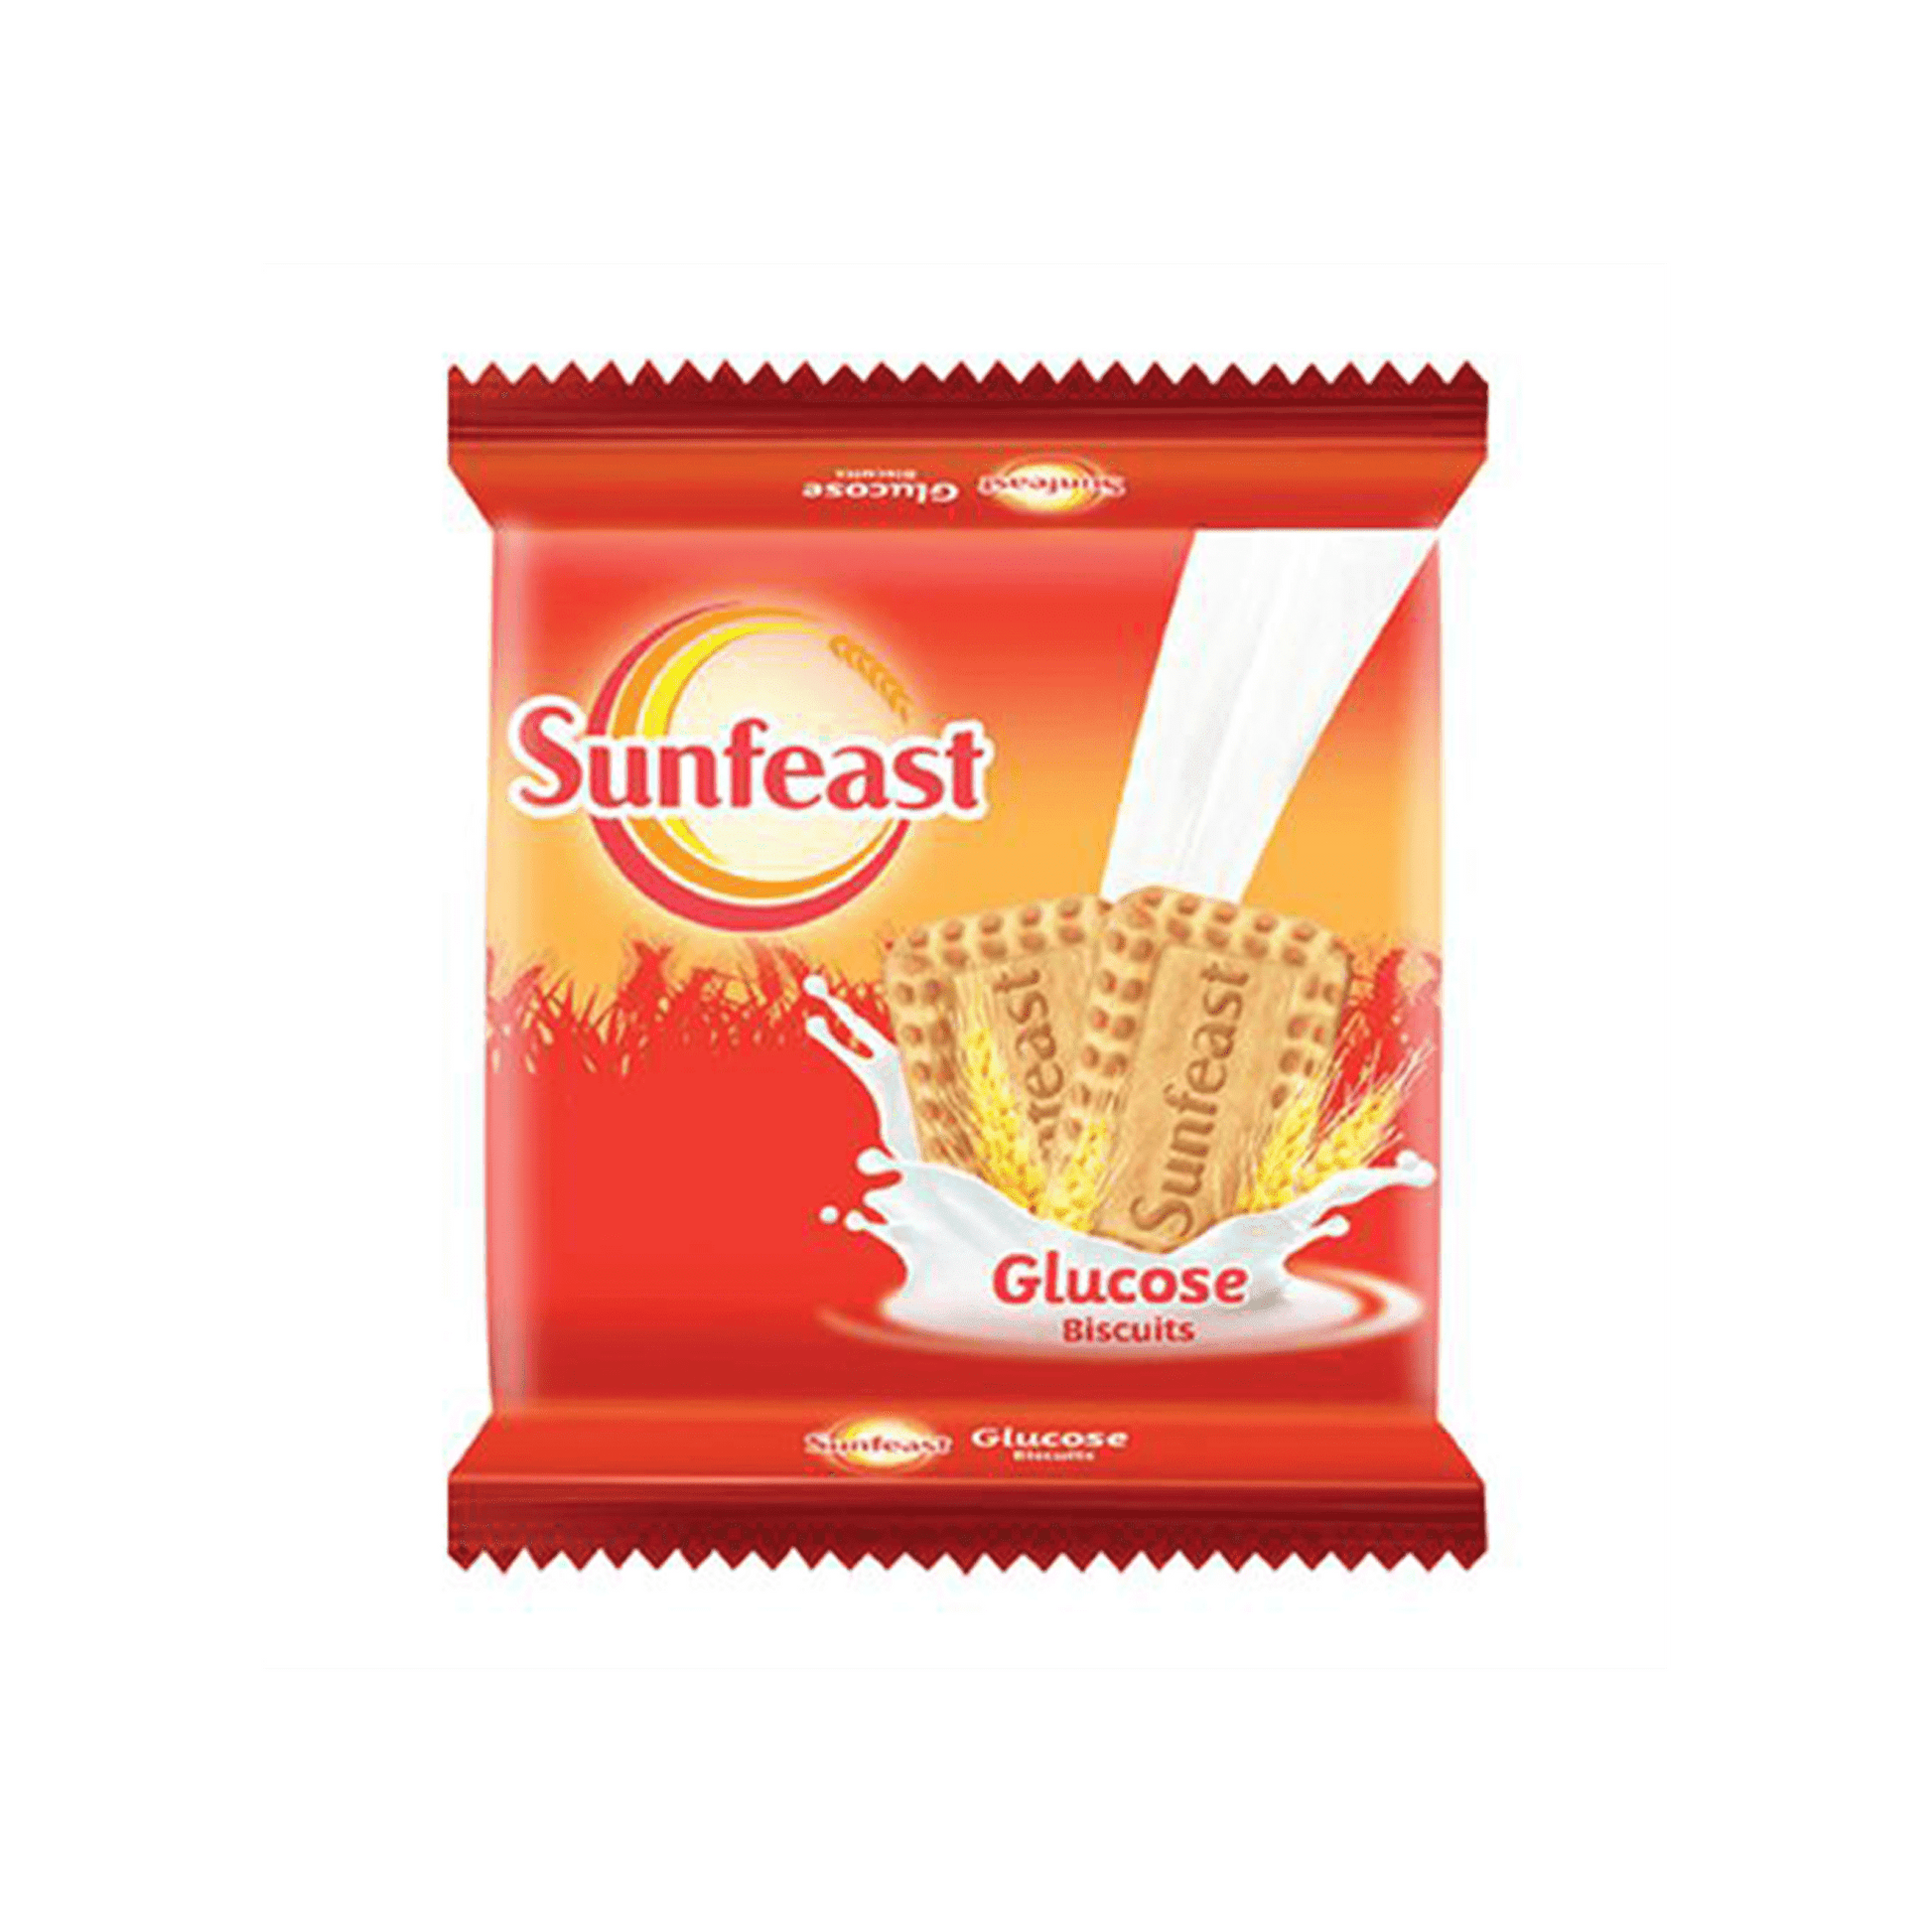 Sunfeast Glucose Biscuits